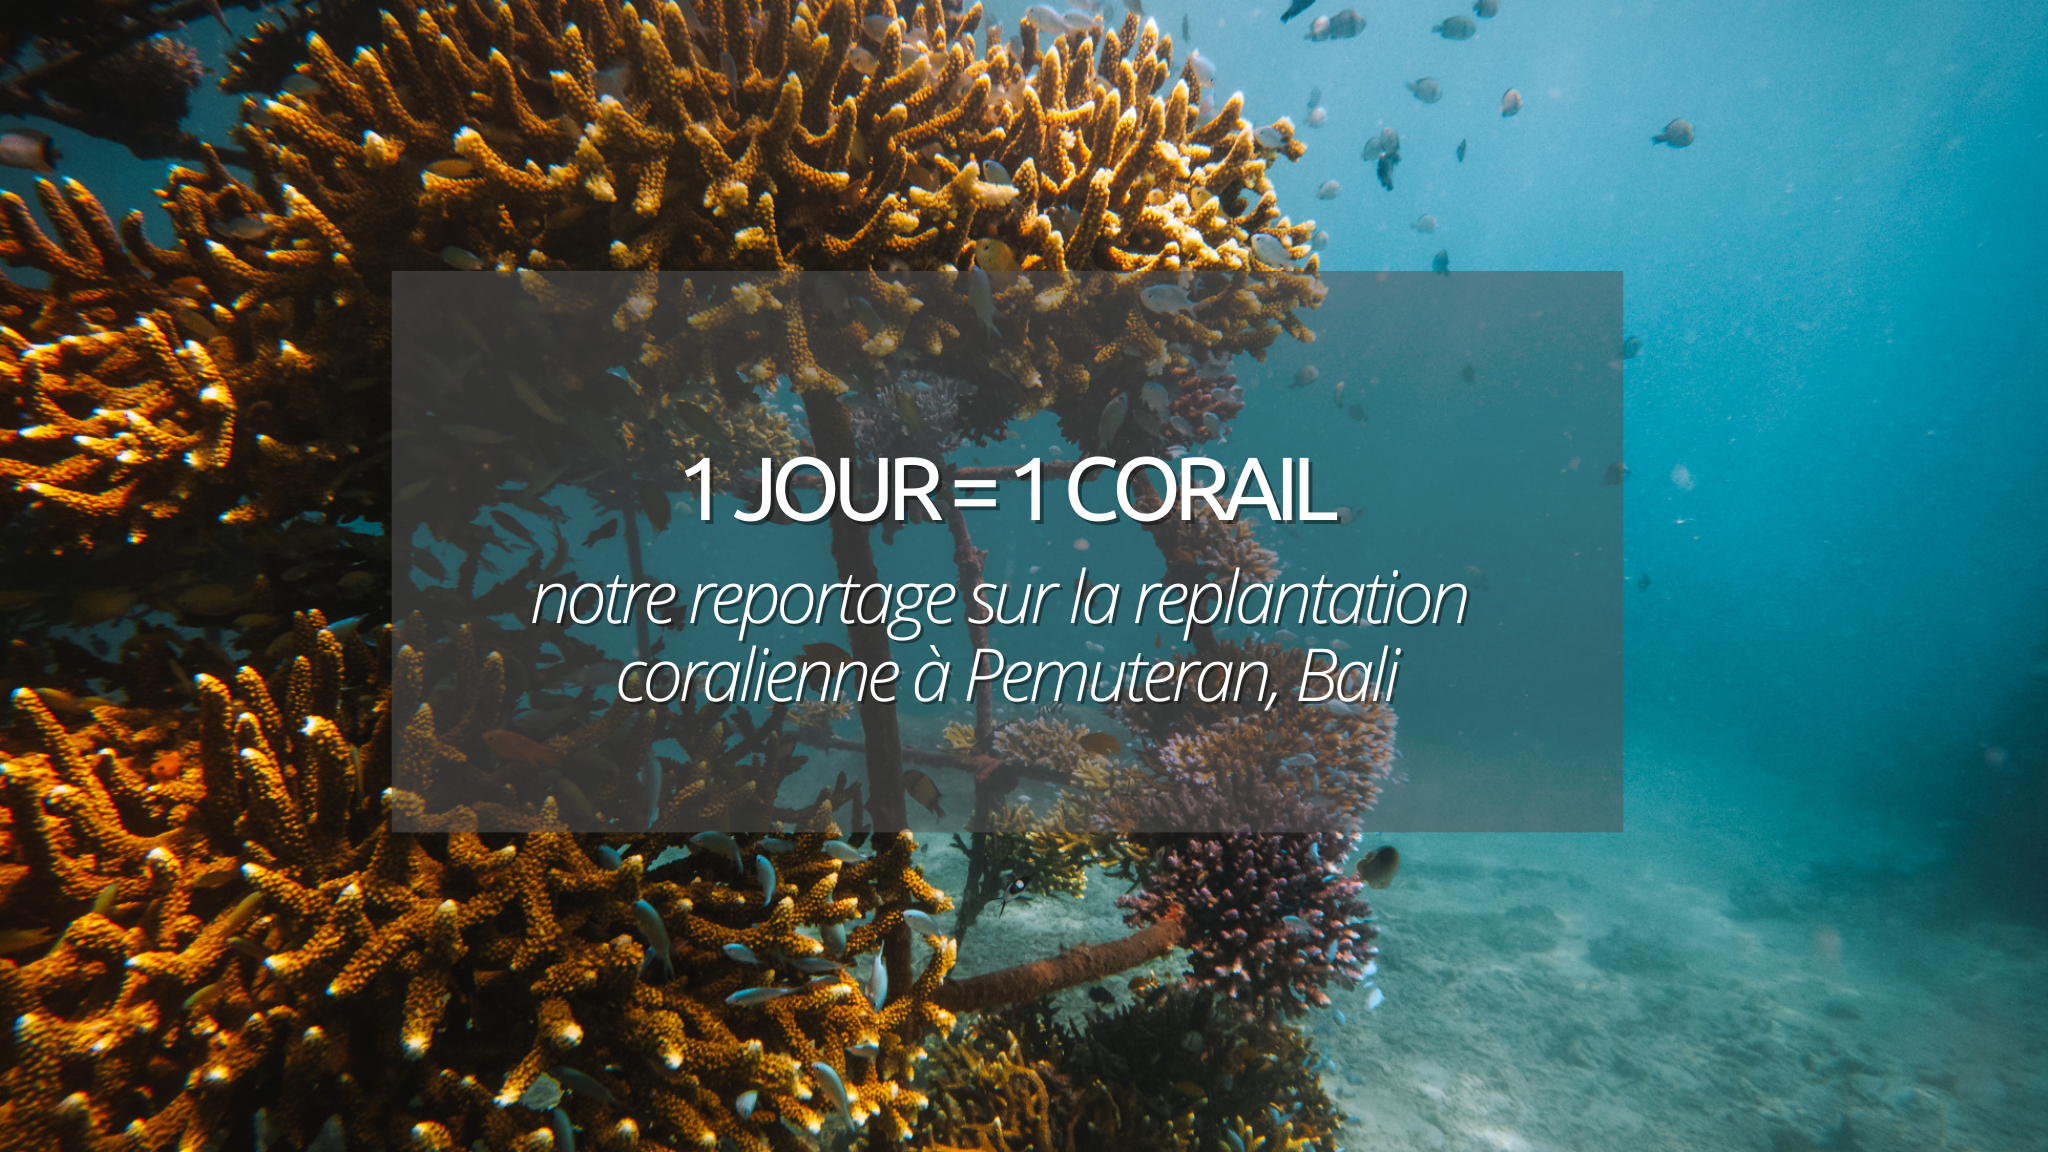 Pemuteran, Bali avec 1 jour = 1 corail : rendez vous au chevet des coraux